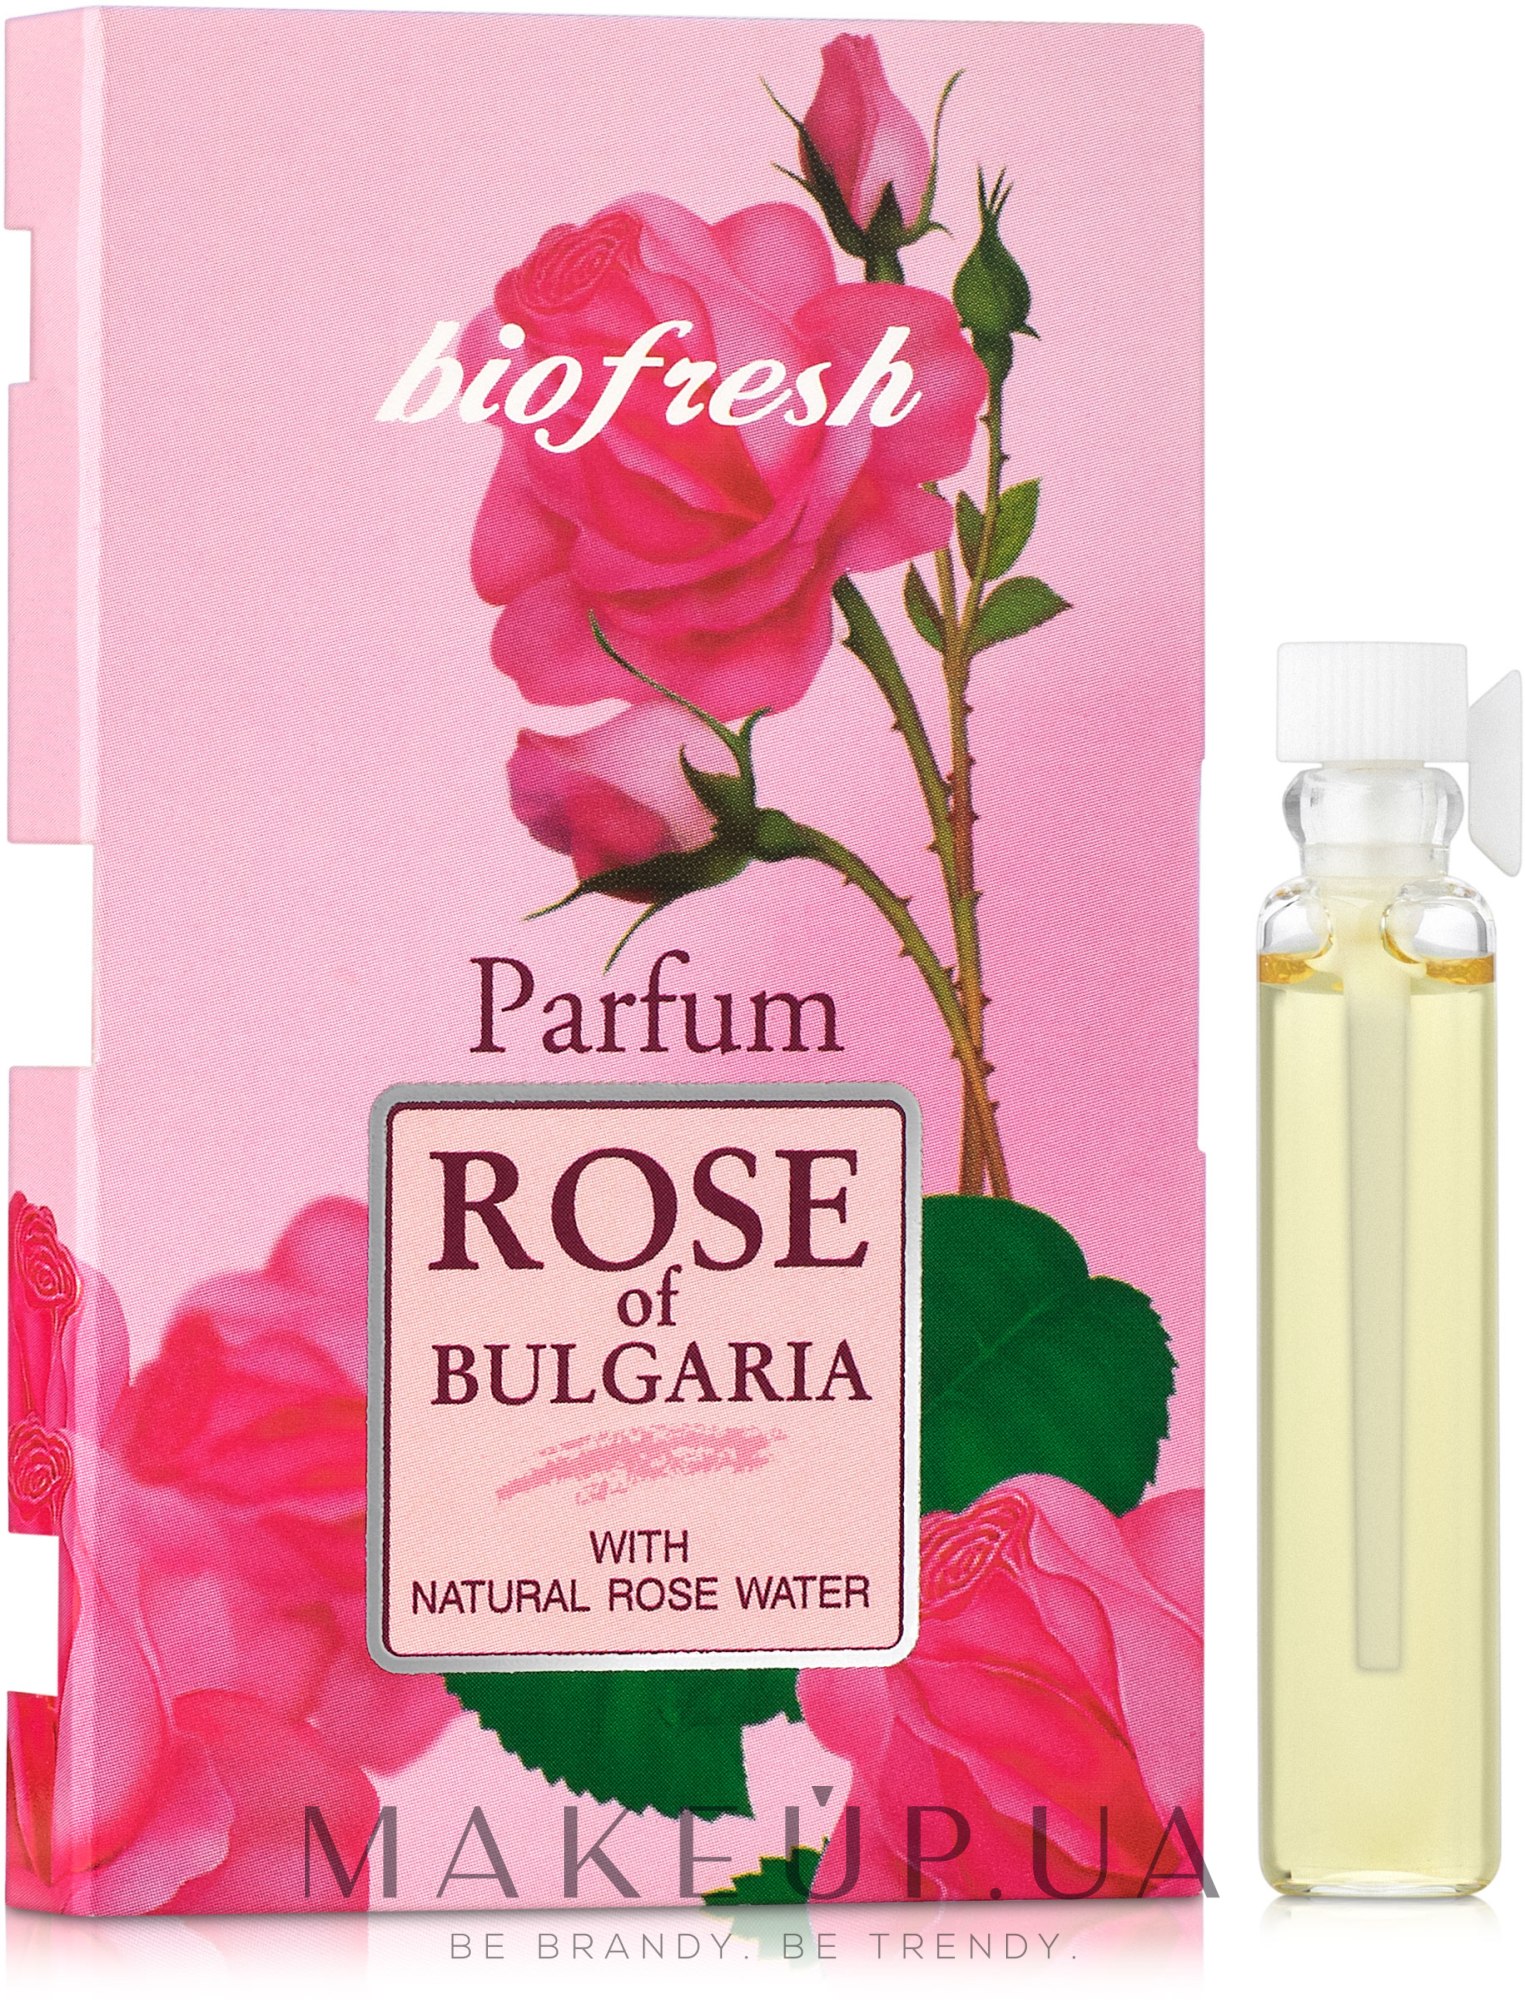 BioFresh Rose of Bulgaria - Парфюмированная вода (пробник) — фото 2.1ml